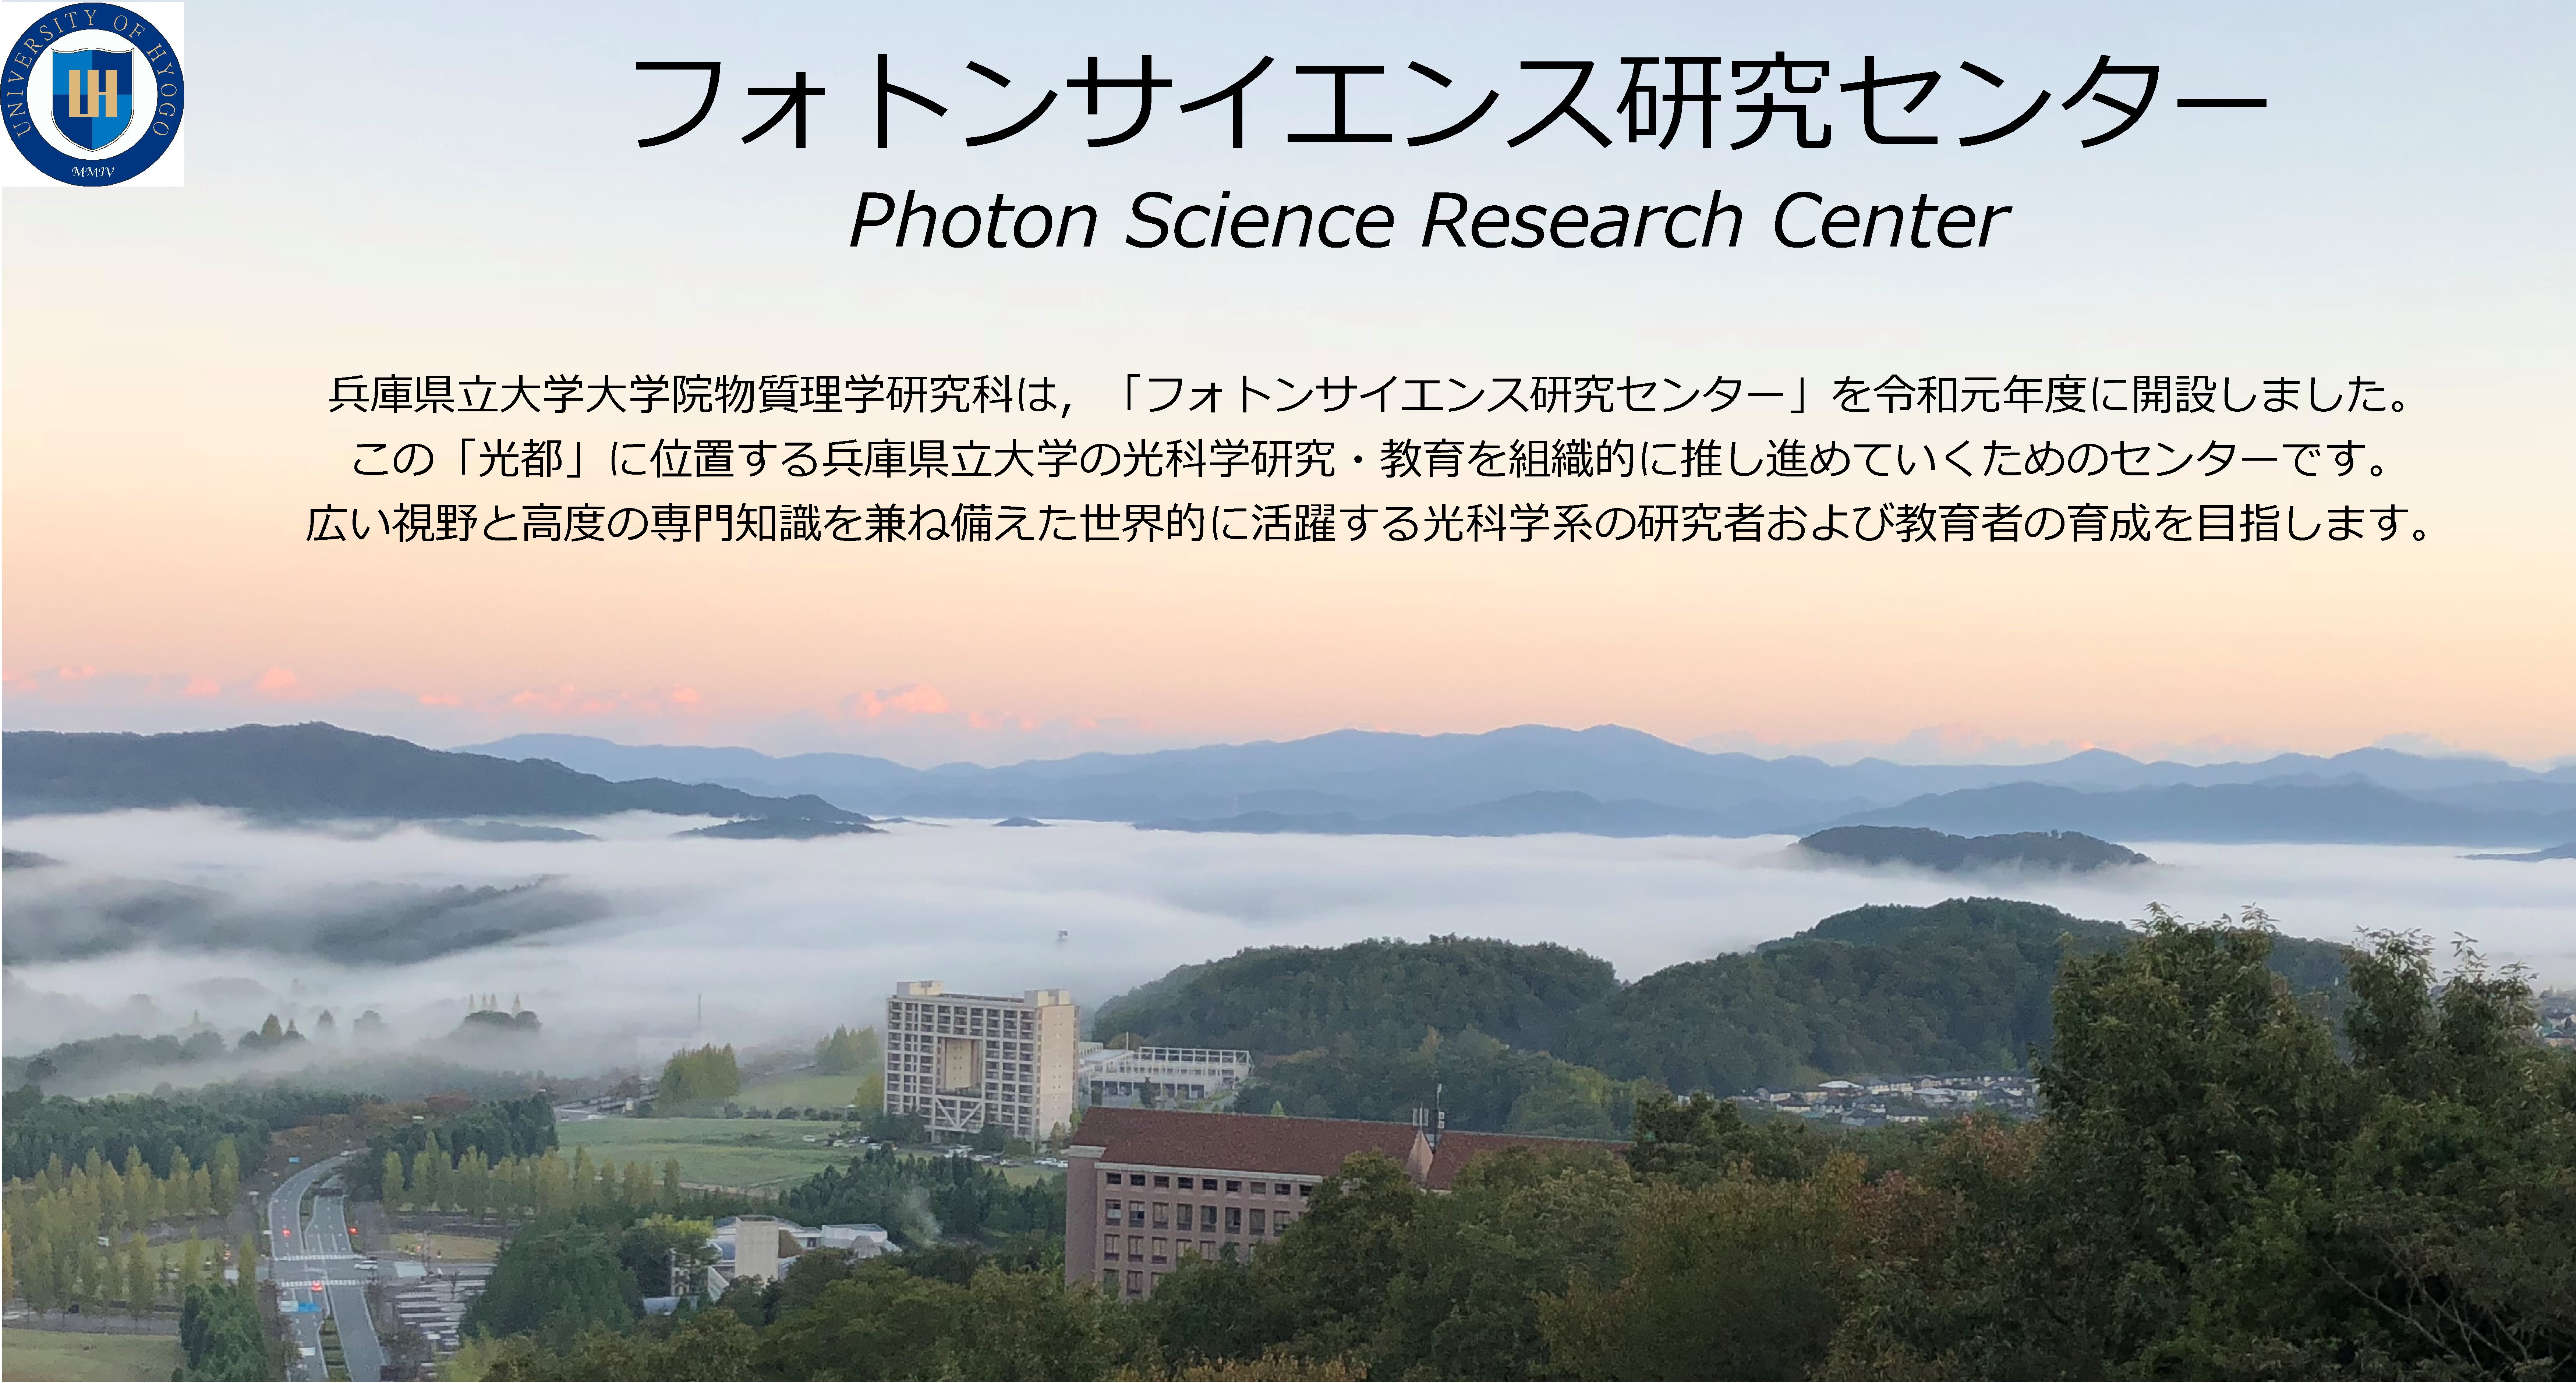 兵庫県立大学大学院物質理学研究科 多重極限物質科学センター